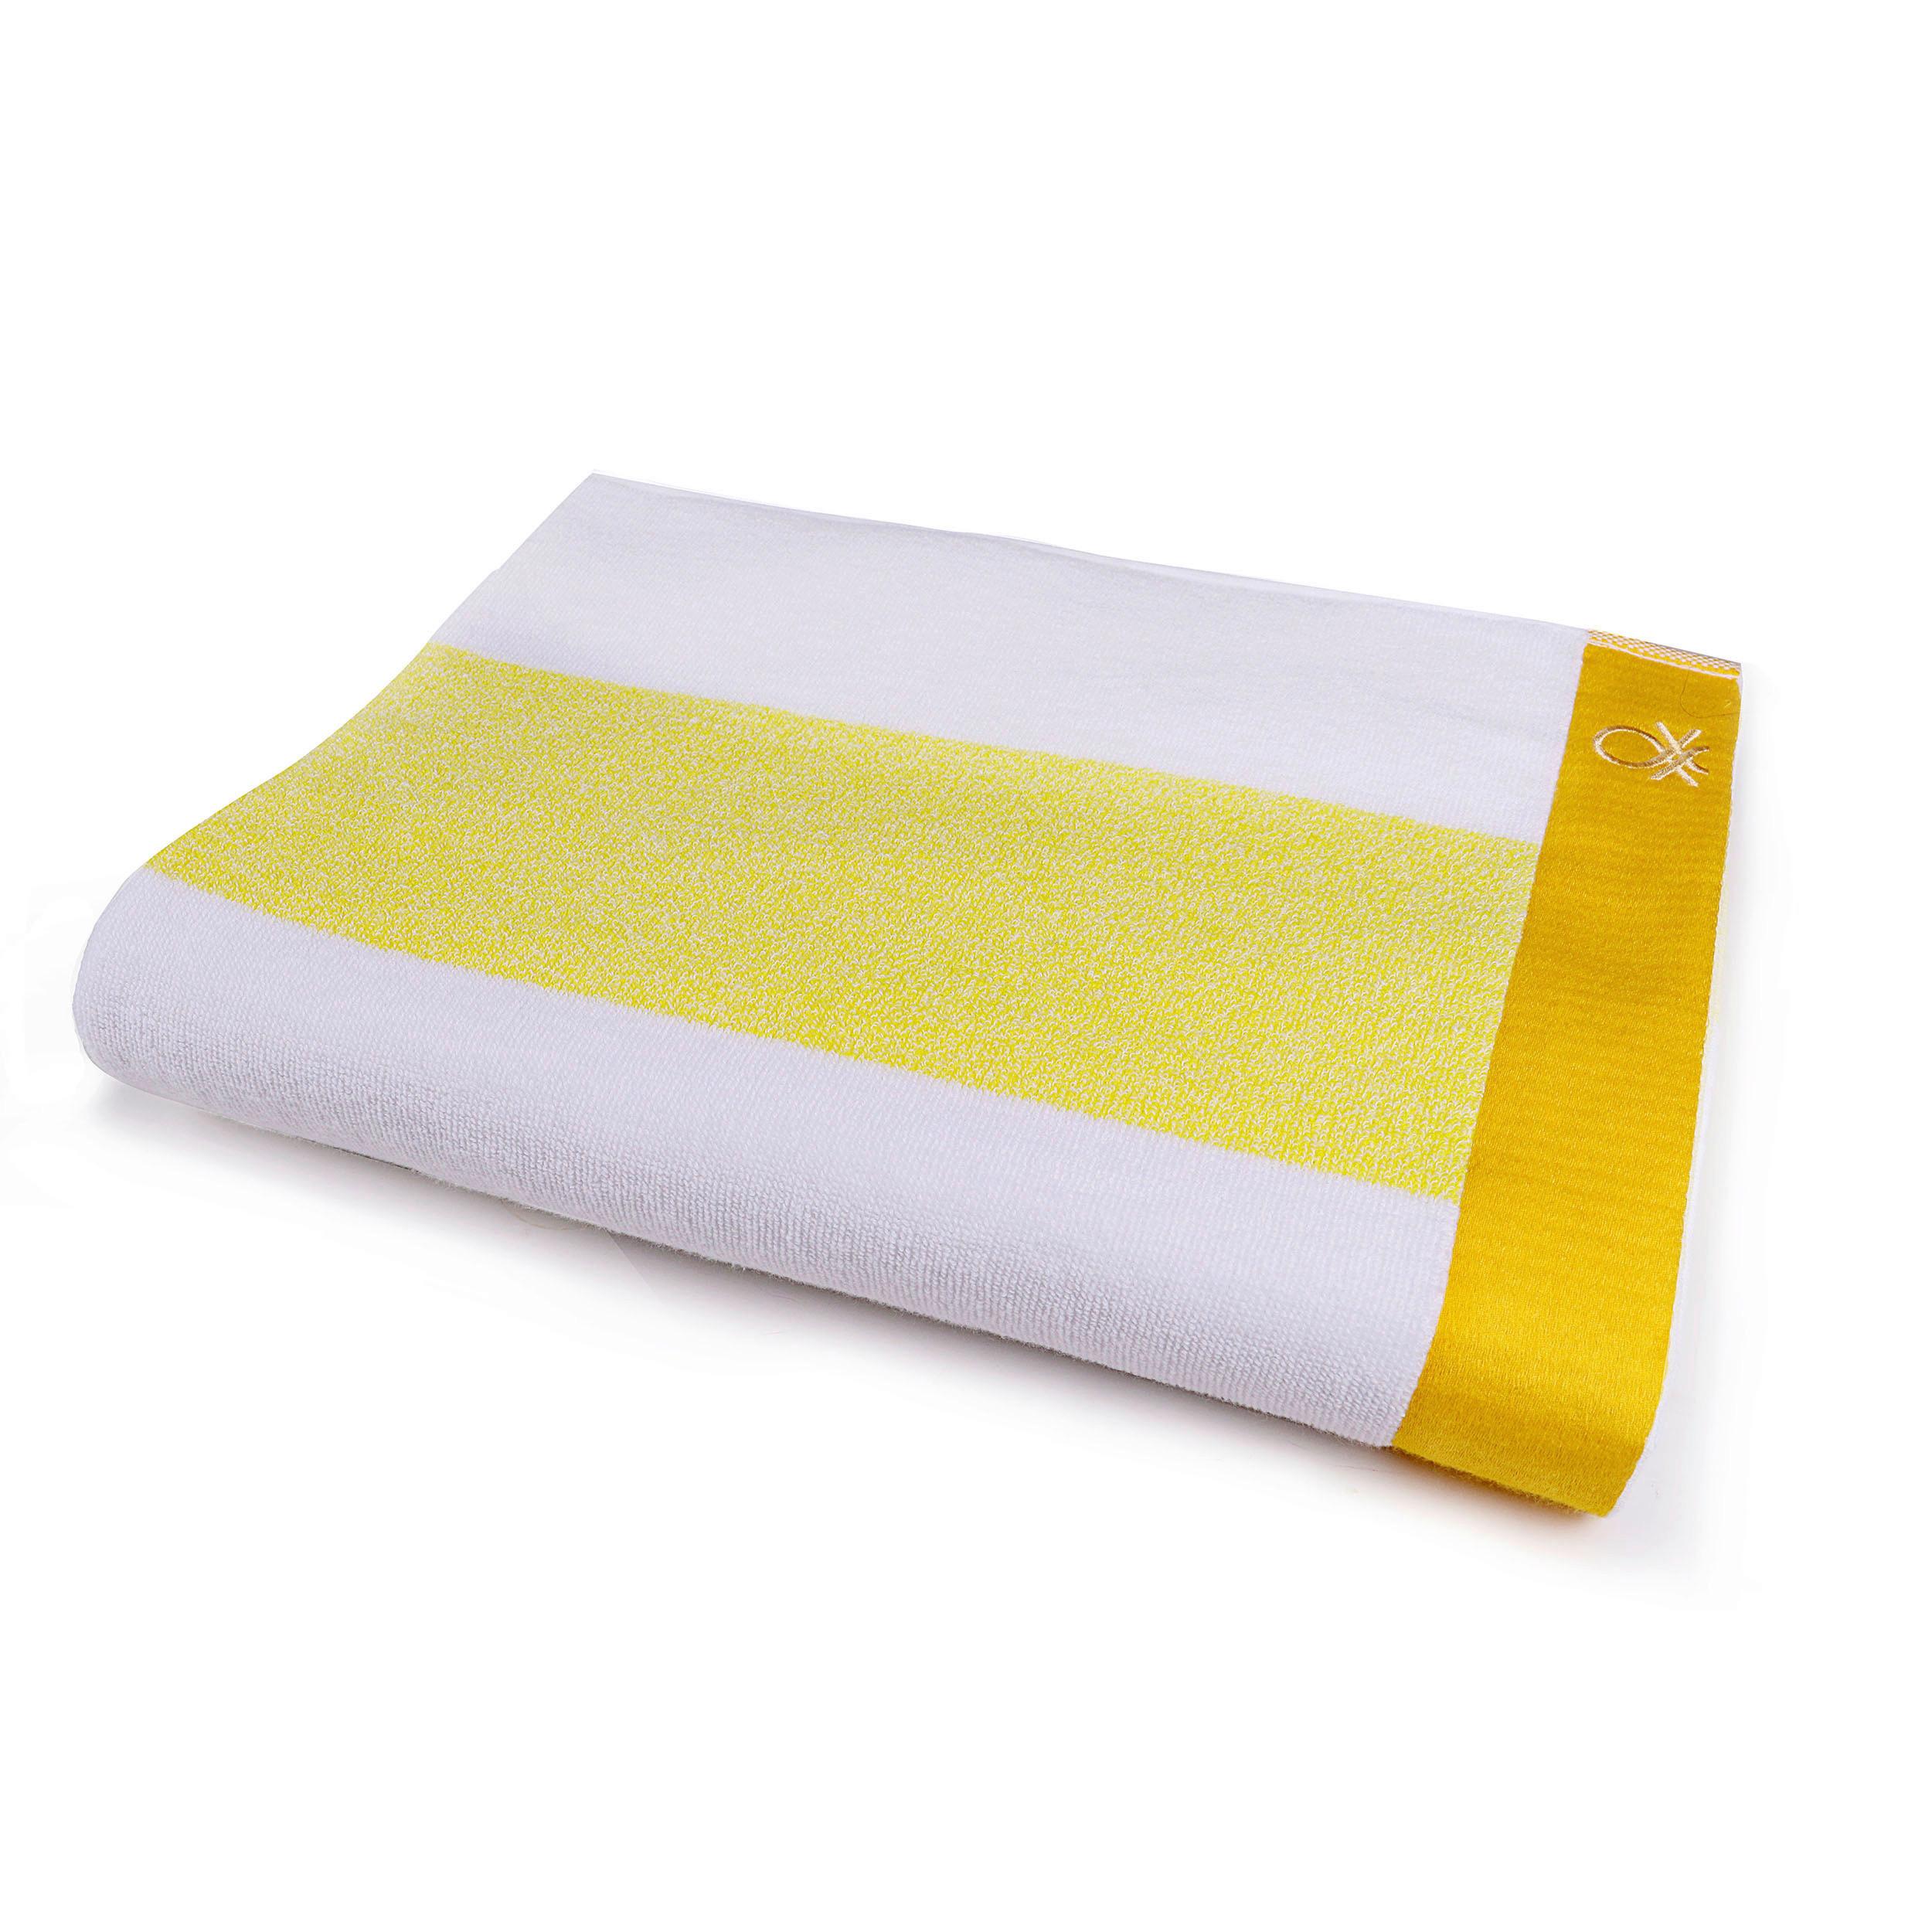 Strandtuch Baumwolle Gelb/ Weiß 90x160x1,5 cm - Gelb/Weiß, Basics, Textil (90/160cm) - Benetton